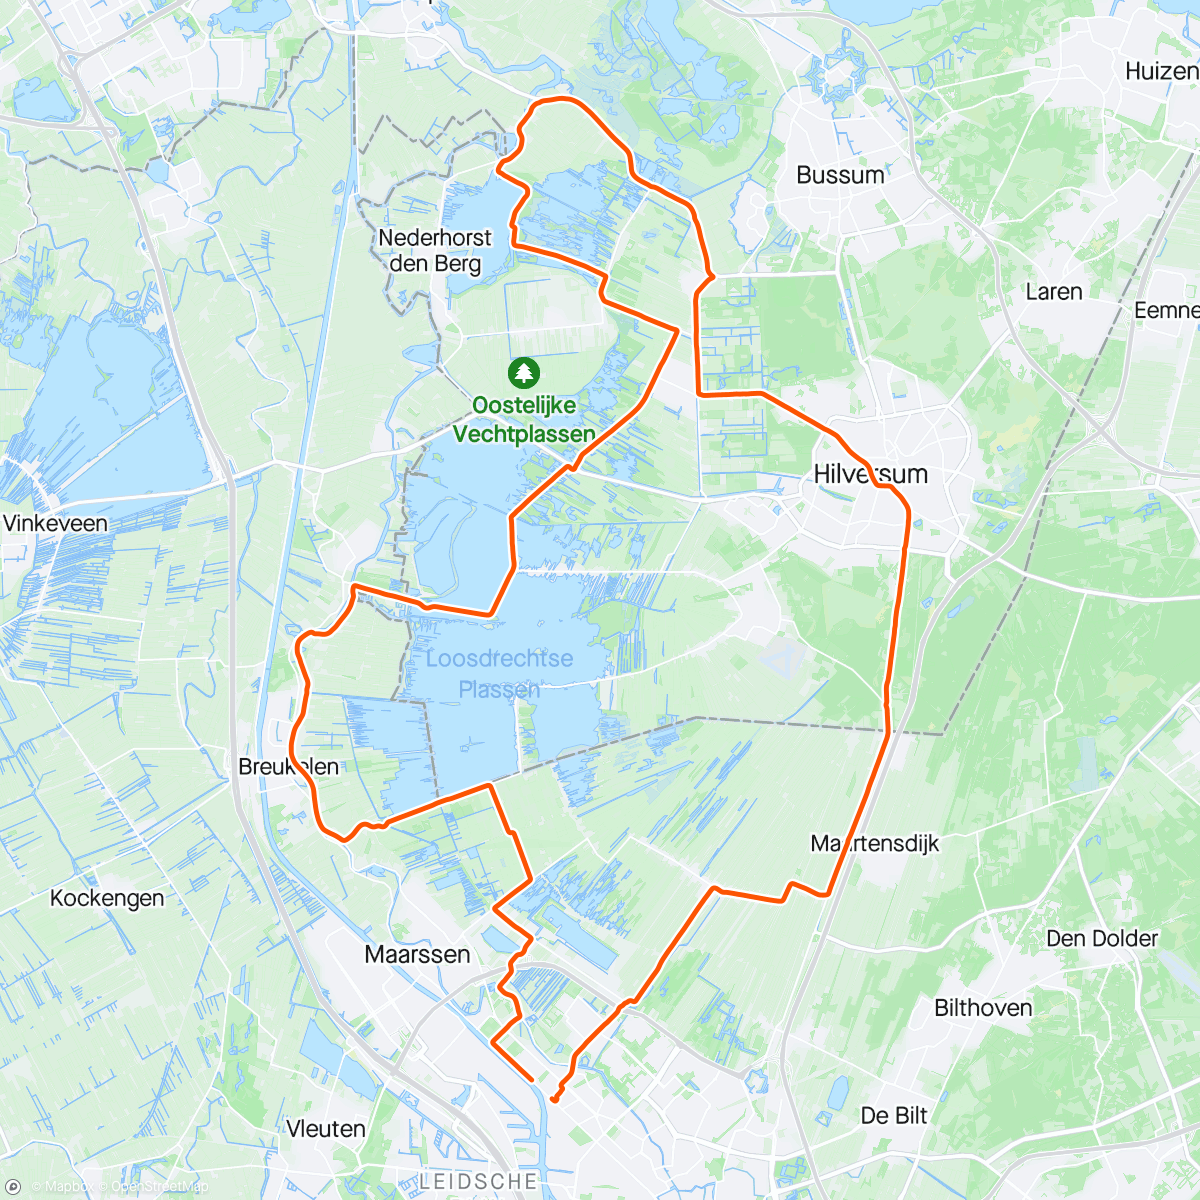 「Loosdrecht - Hilversum」活動的地圖